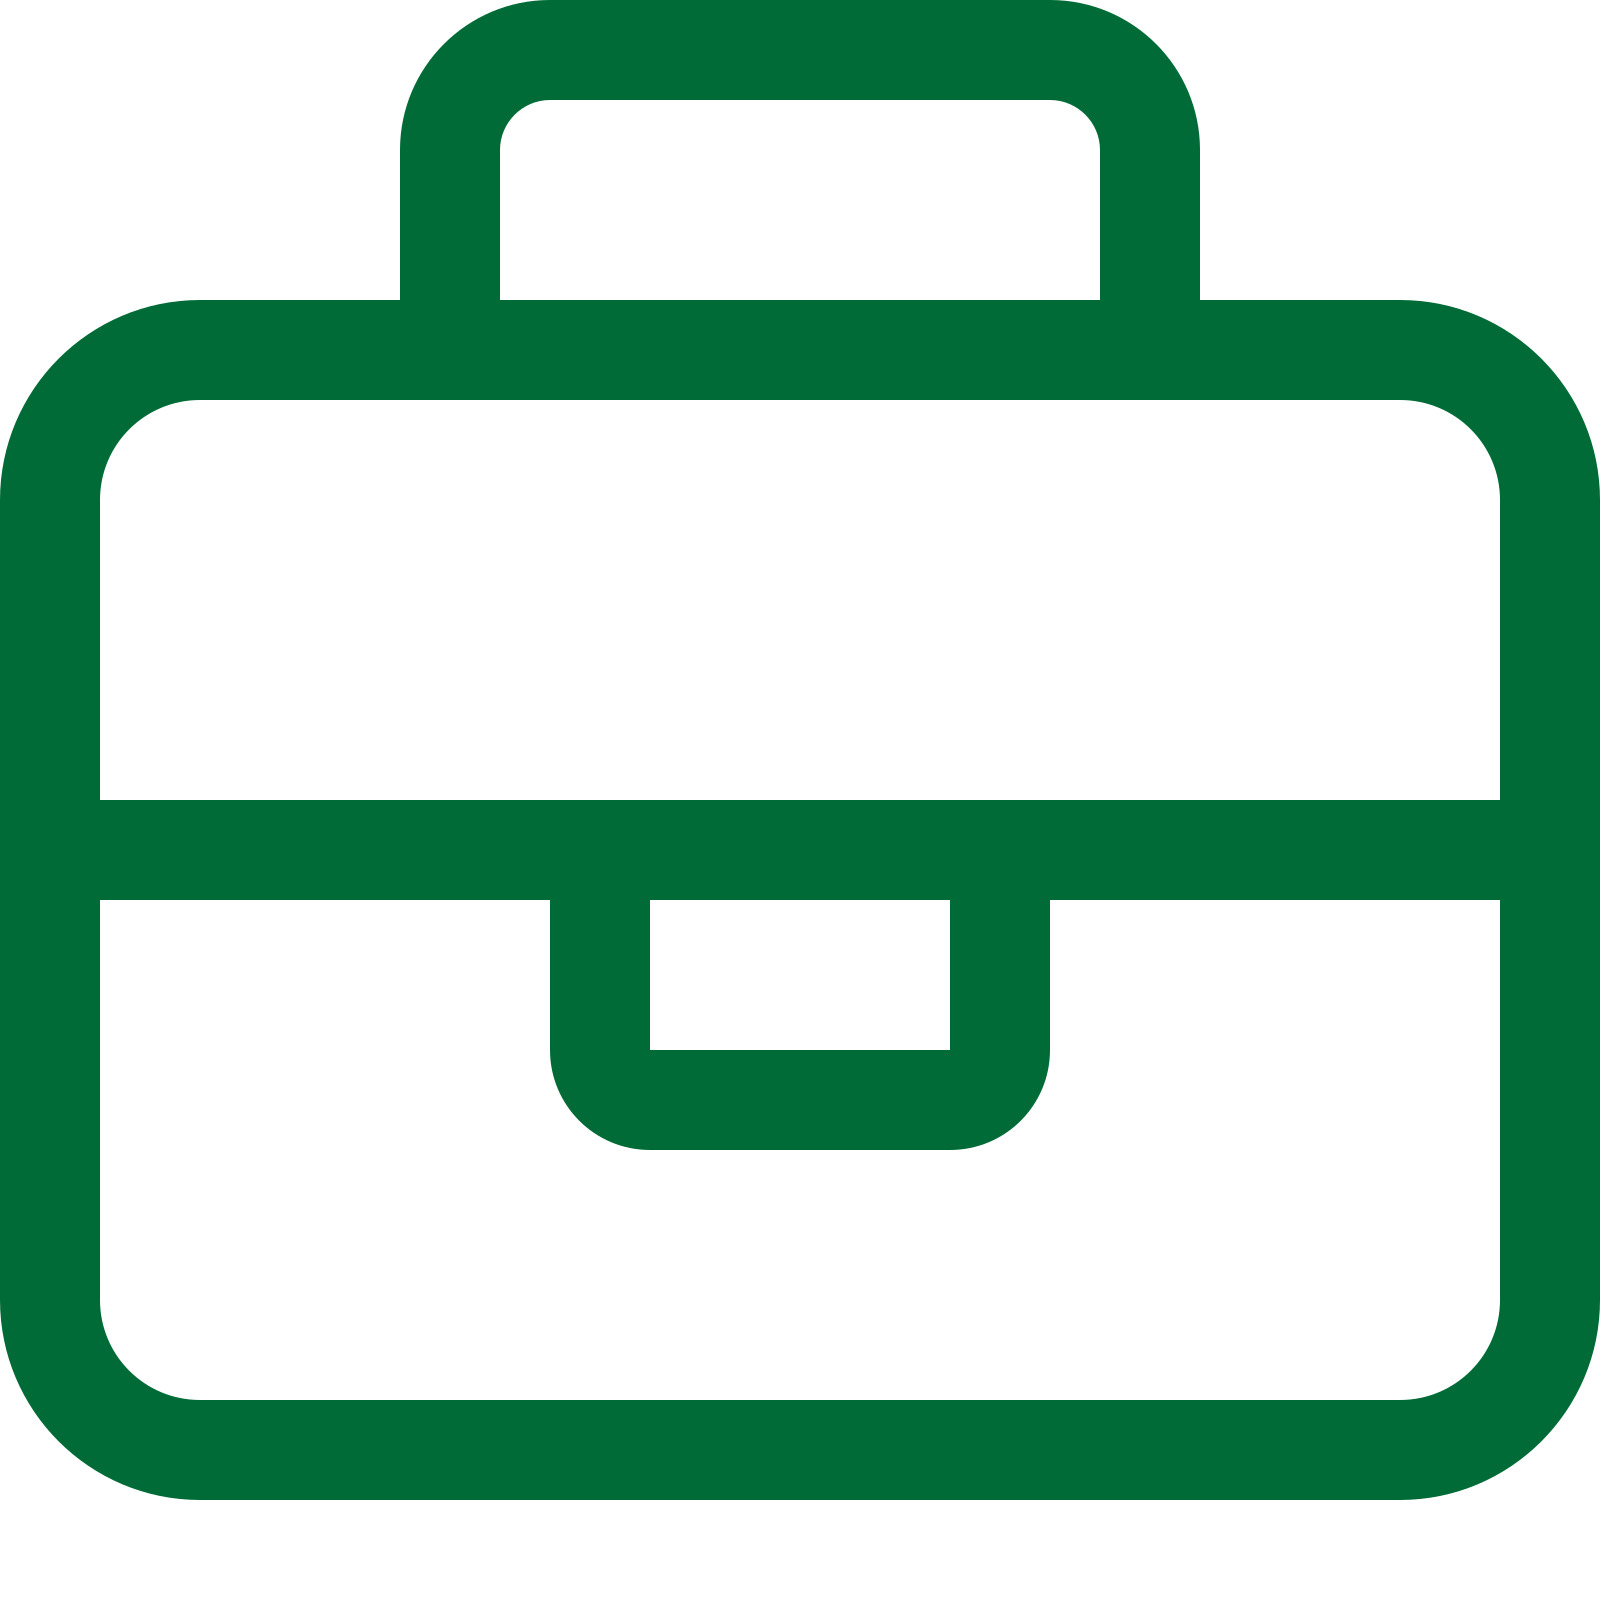 Green briefcase icon